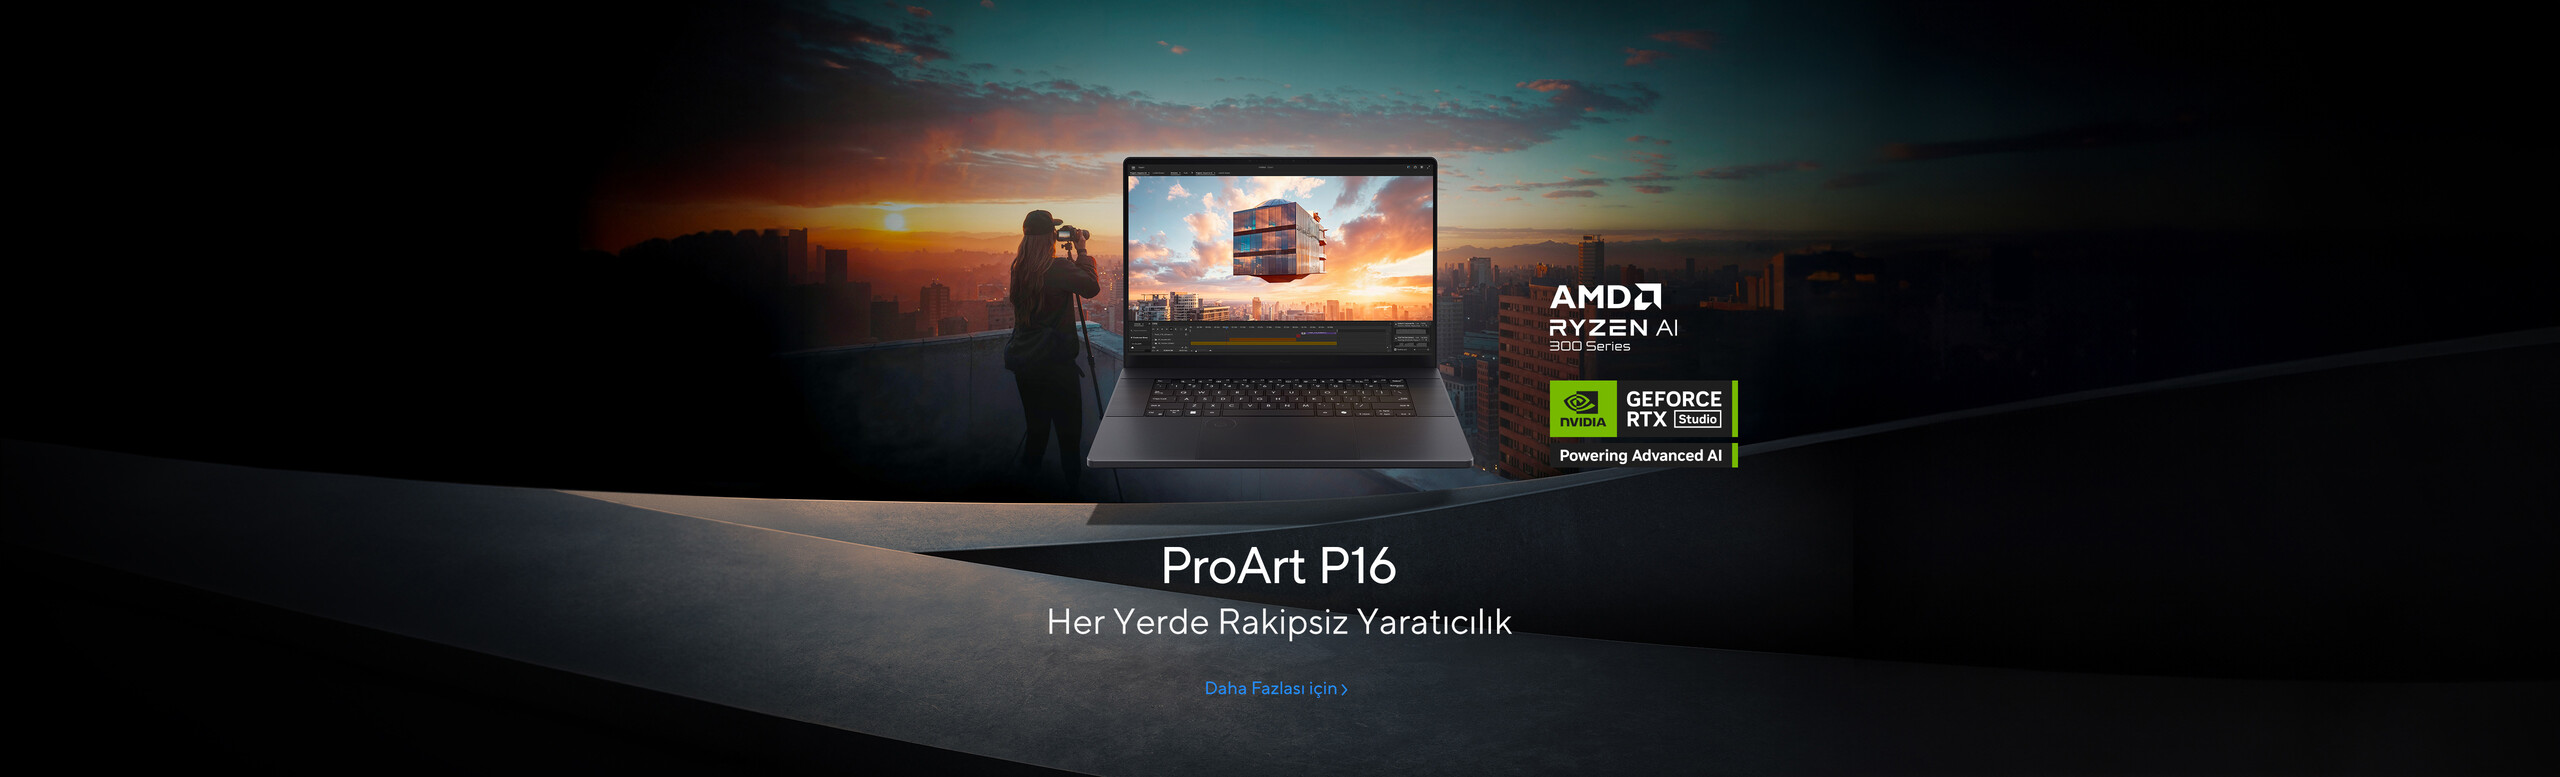 ProArt P16 - Her Yerde Rakipsiz Yaratıcılık